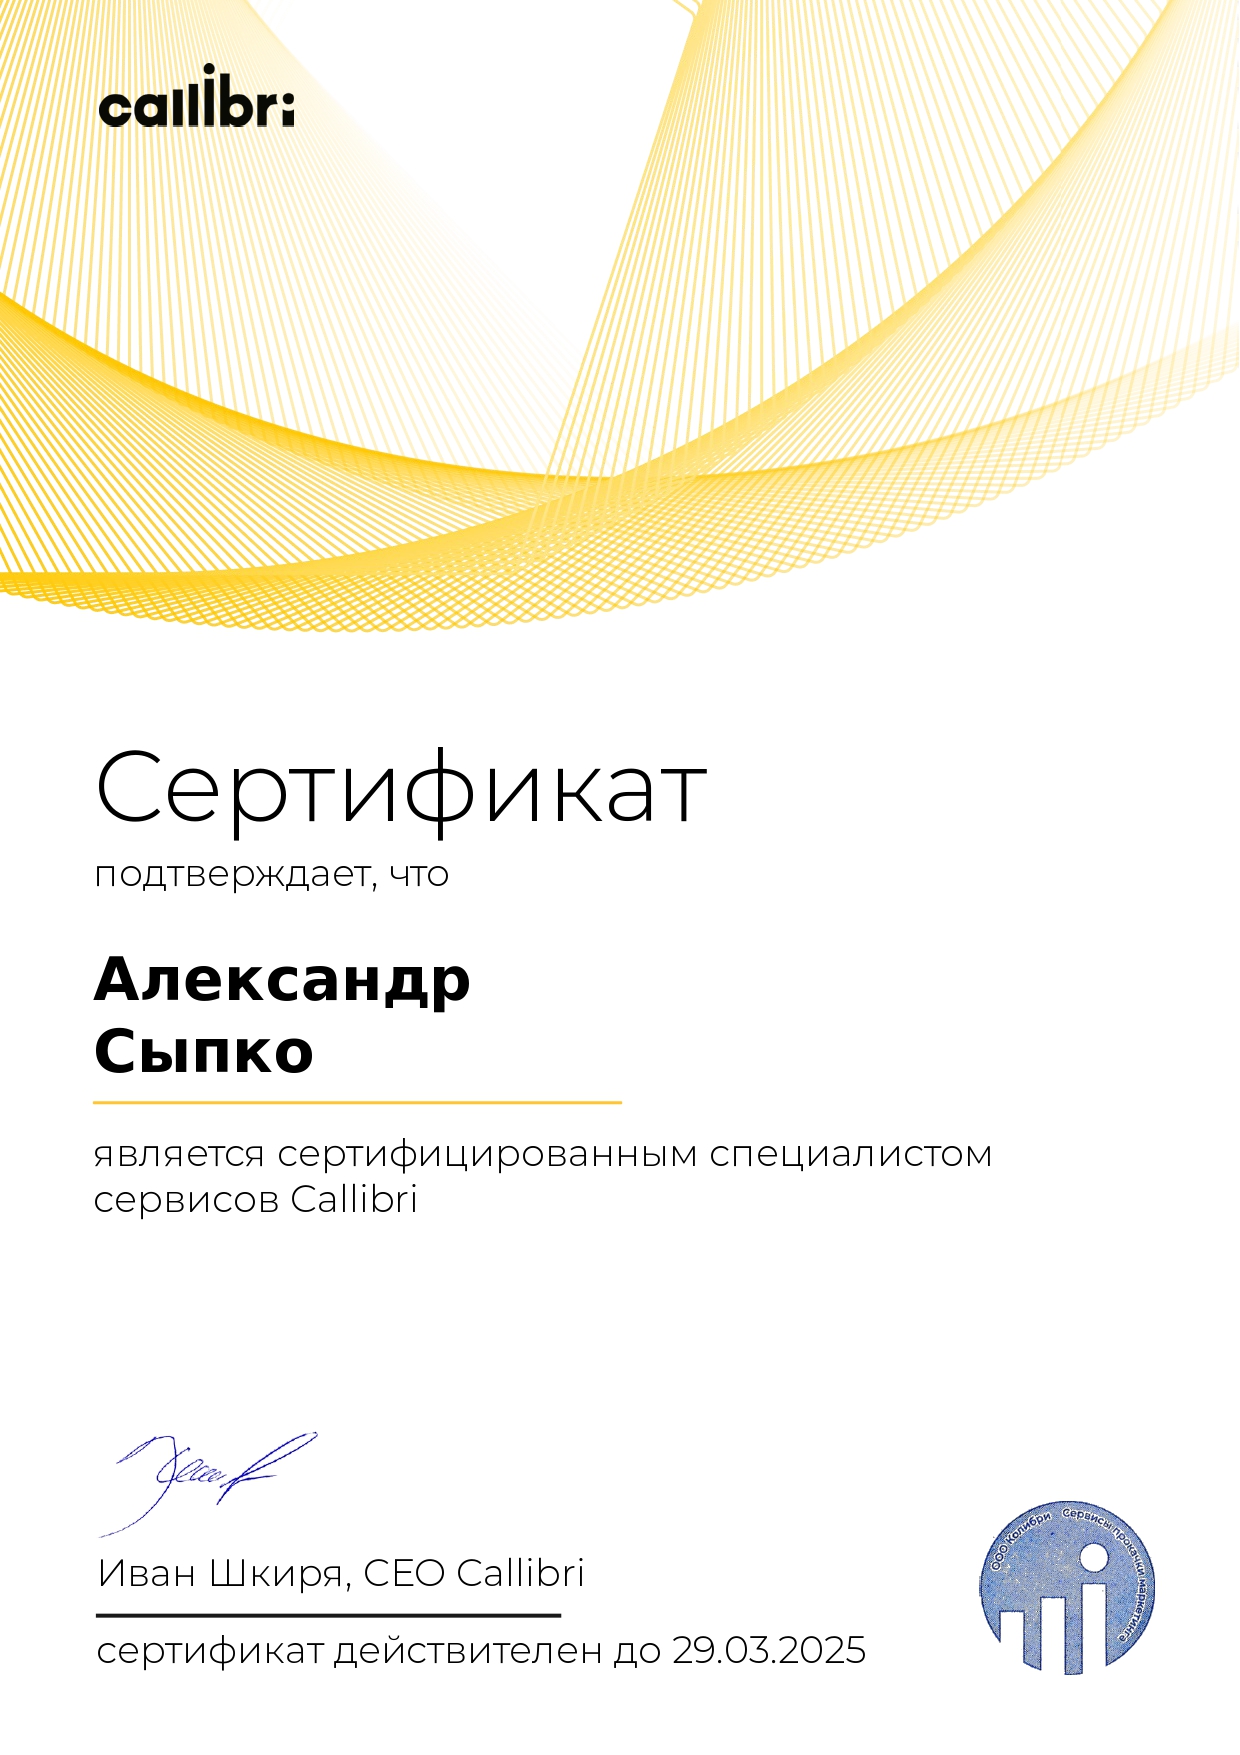 Александр Сыпко - сертифицированный партнёр Callibri 2022